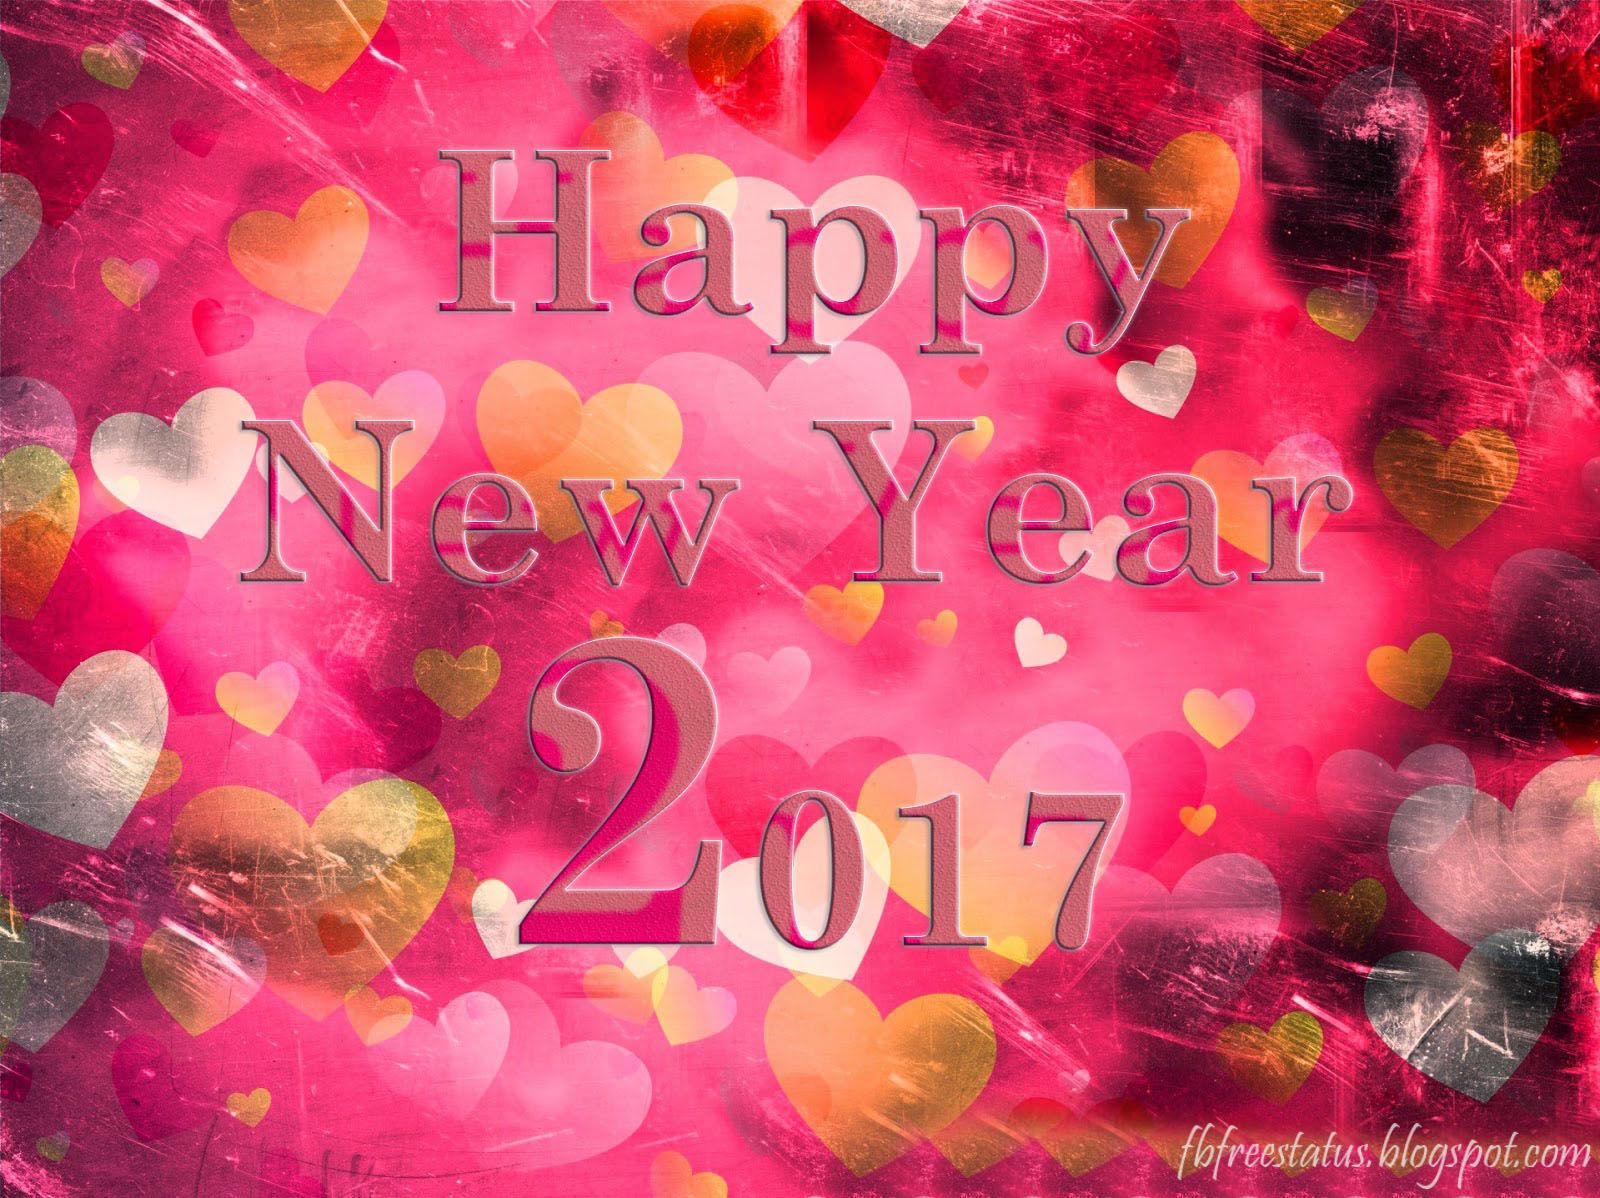 34+] Happy New Year 2020 Love Wallpapers - WallpaperSafari